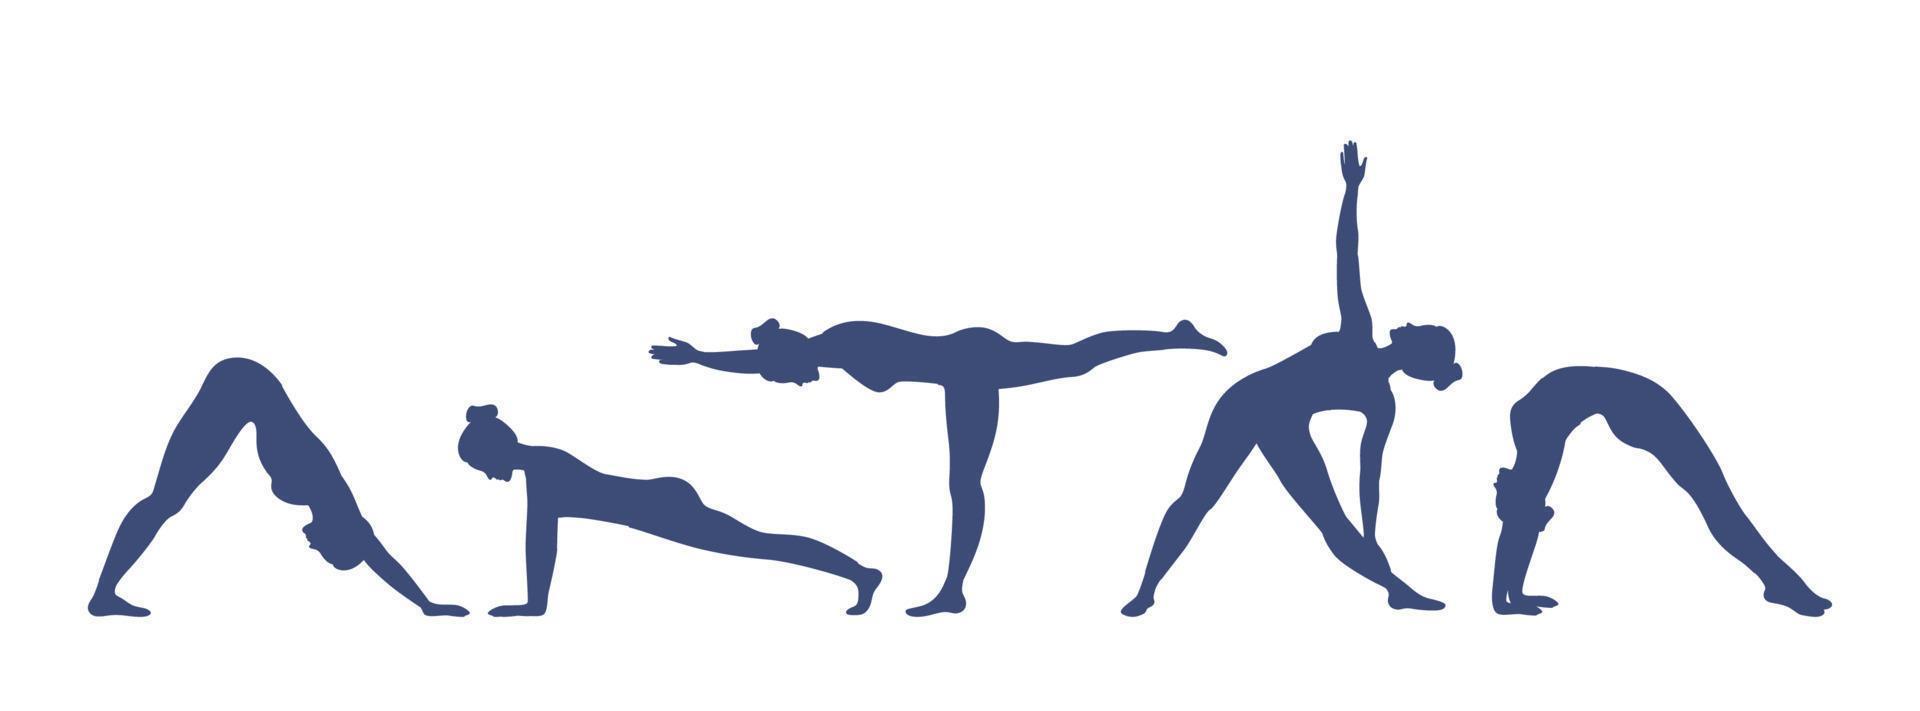 conjunto de posturas de yoga. las mujeres jóvenes hacen ejercicios de yoga. estilo de vida saludable con asanas de yoga. ilustración vectorial vector